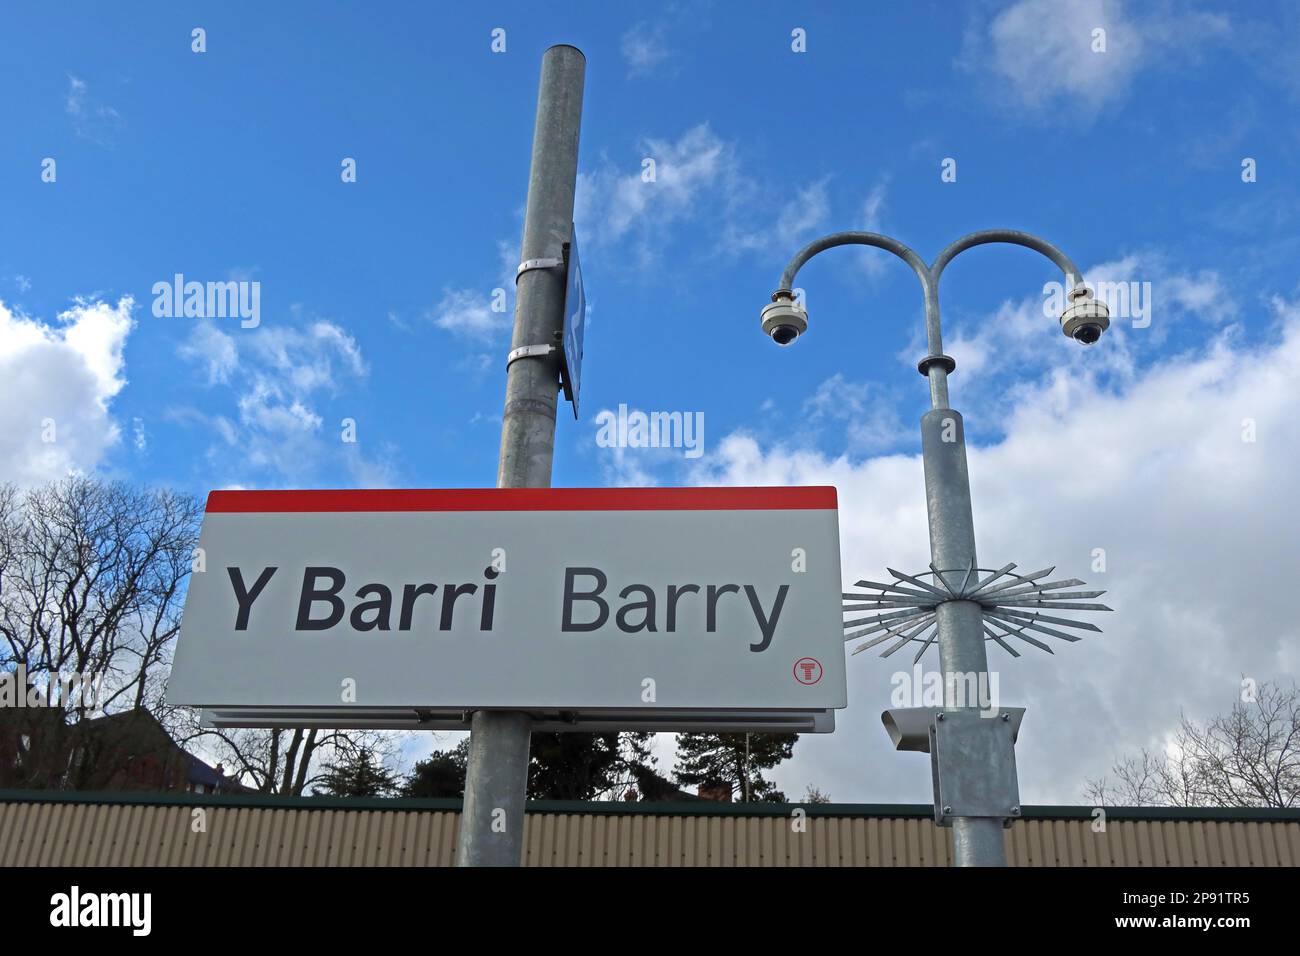 Le ciel bleu à la gare de Barry signe de plate-forme avec CCTV, Broad Street, ( y Barri), Vale de Glamorgan, au sud du pays de Galles, Cymru, Royaume-Uni Banque D'Images